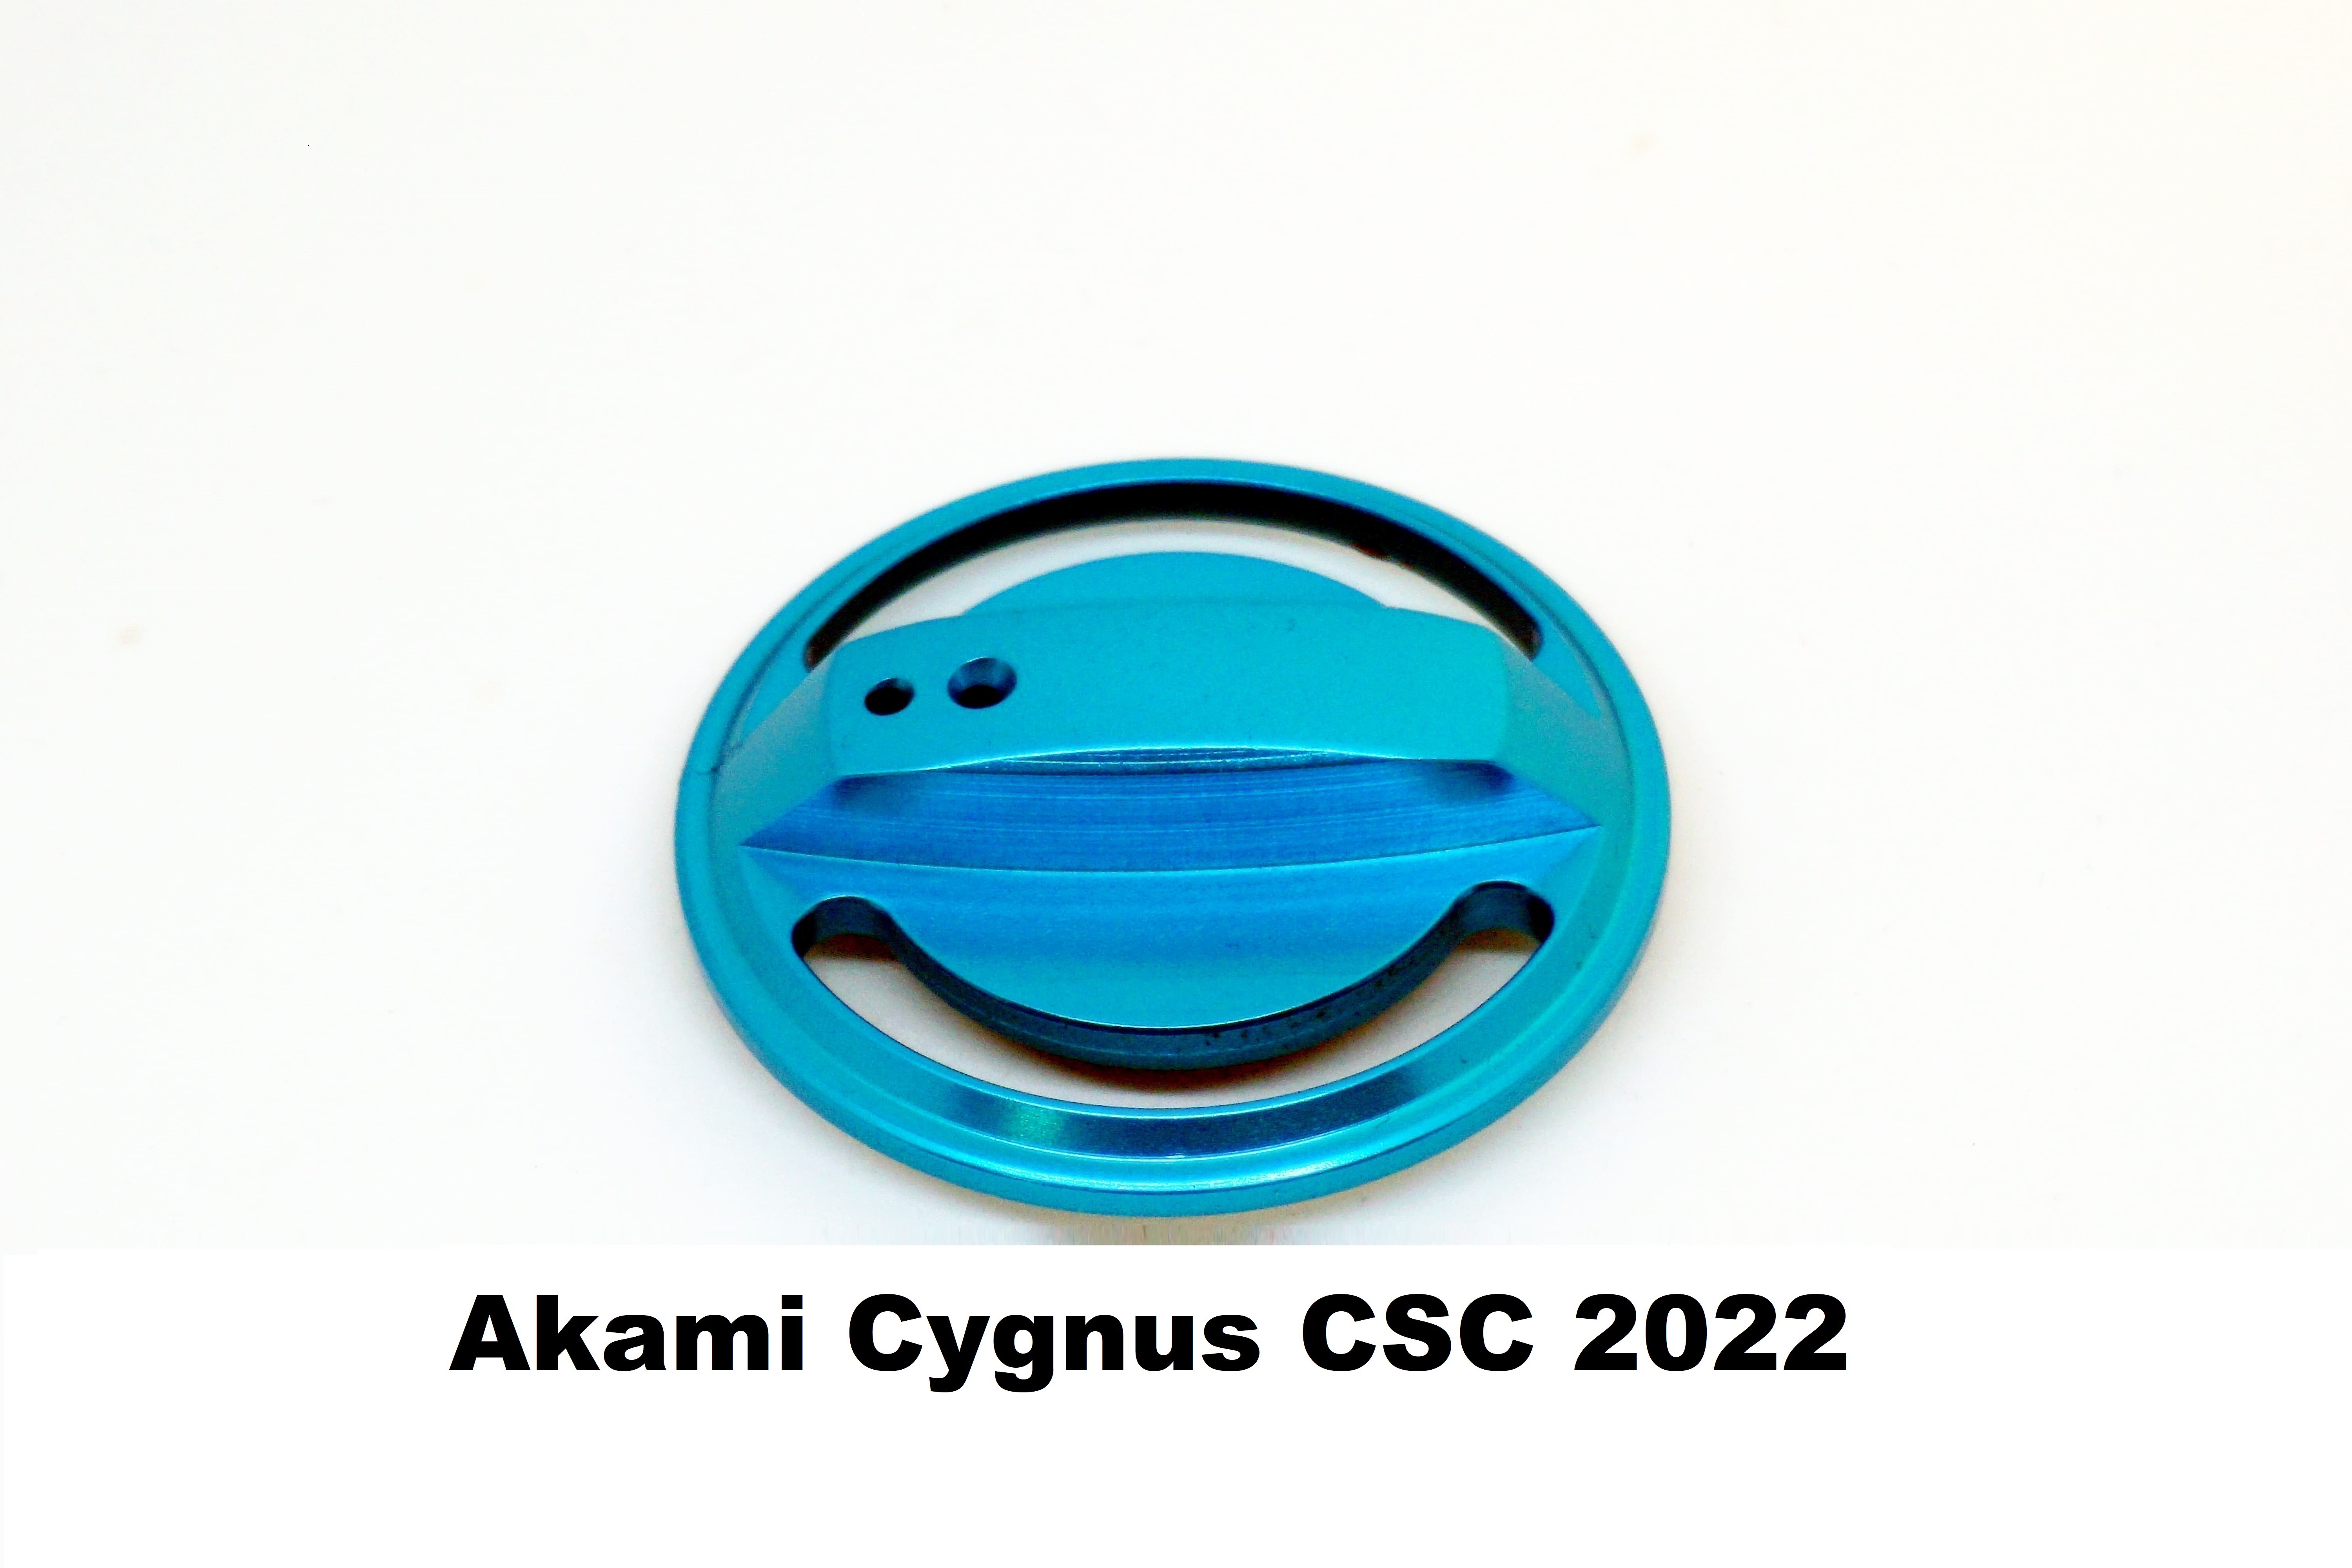 Plugue de Freio Akami Cygnus CSC 2022